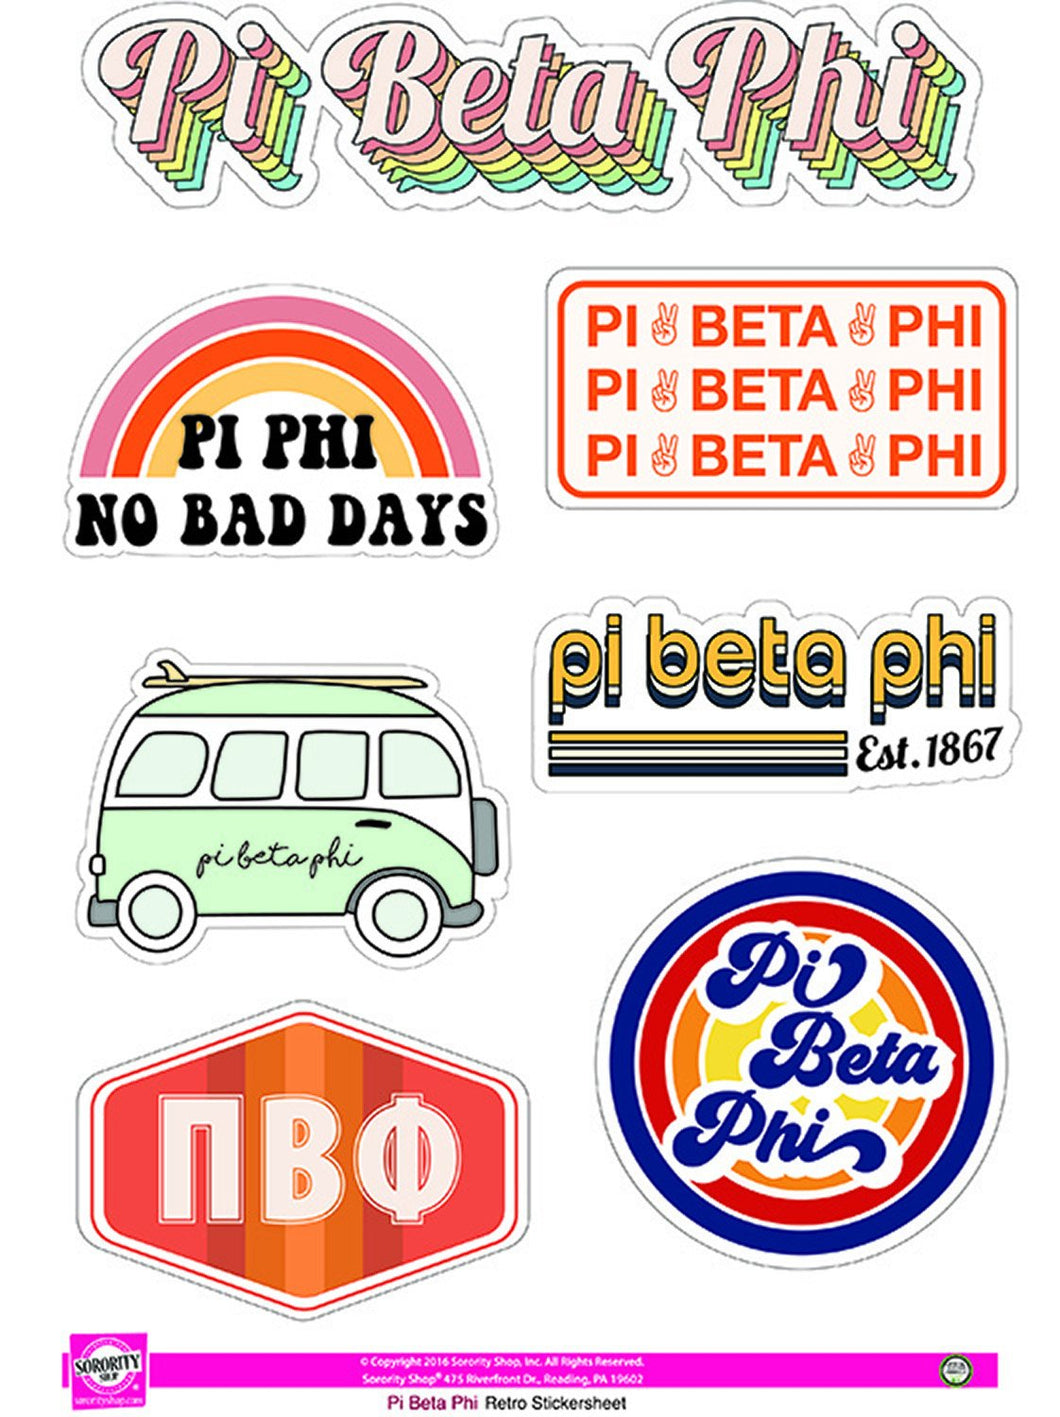 Retro Sticker Sheet - Pi Beta Phi